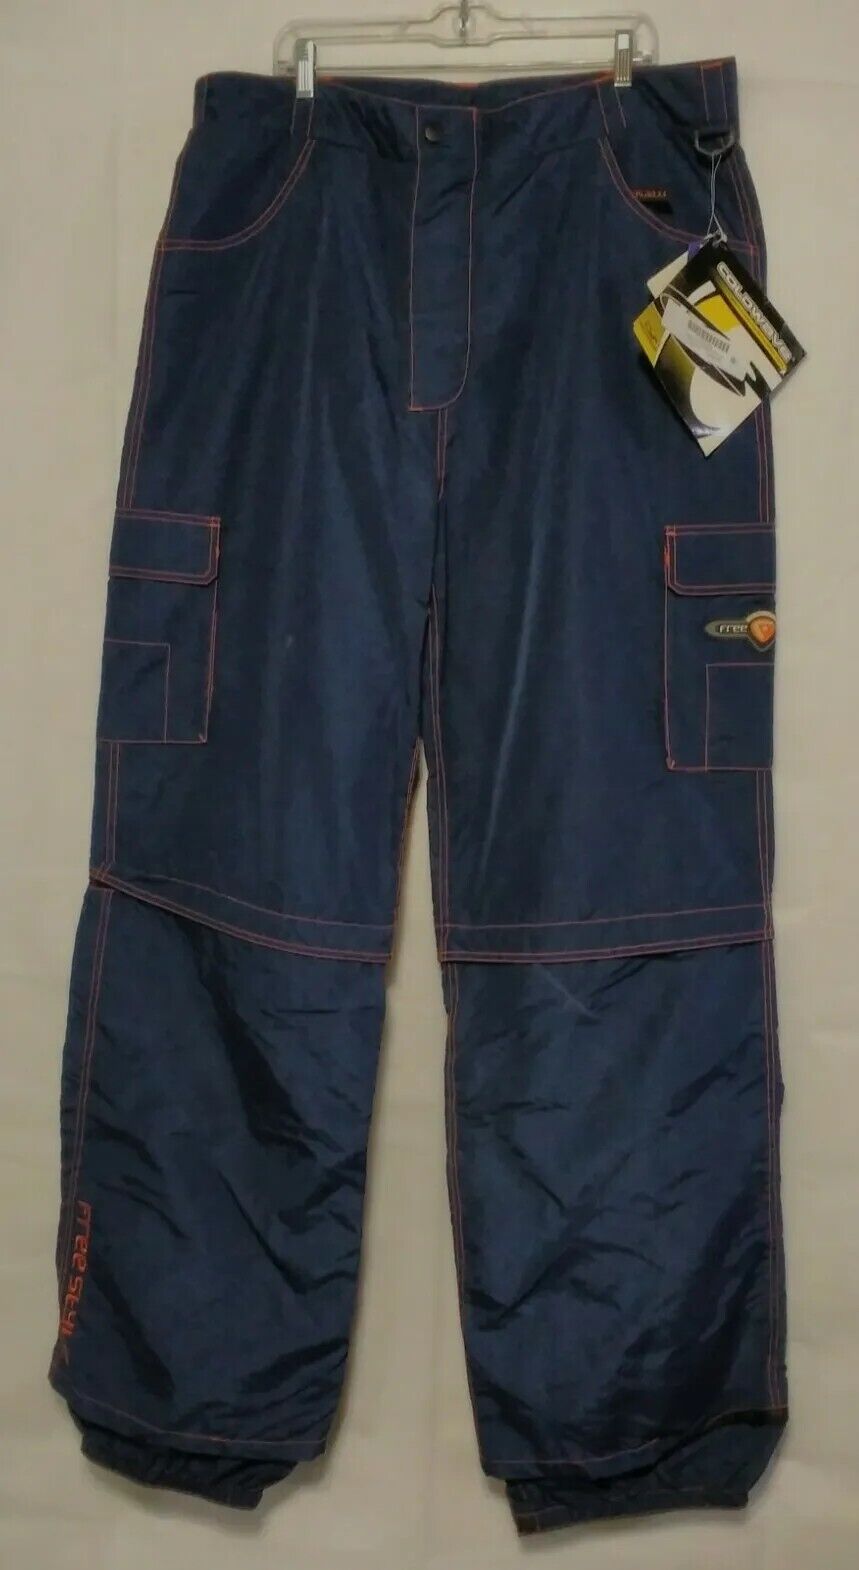 Coldwave Freestyle Snow Pants Size 3xlg 42x36 Blue/orange Trim